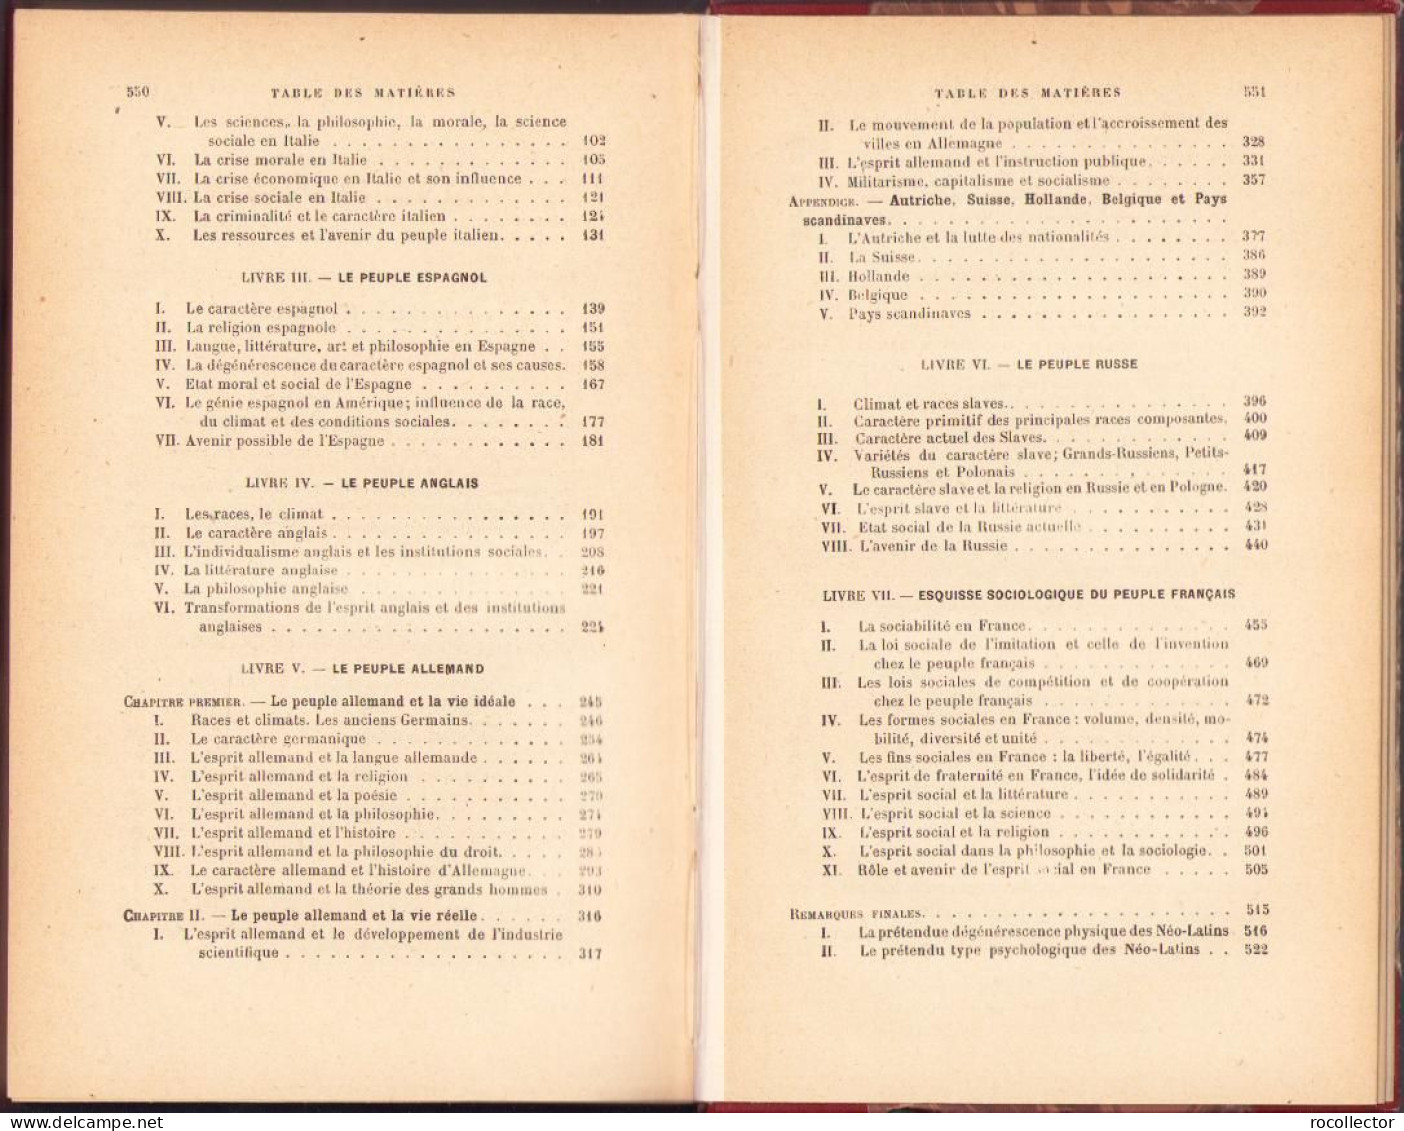 Esquisse Psychologique Des Peuples Europeens Par Alfred Fouillée, 1921, Paris C1648 - Libri Vecchi E Da Collezione